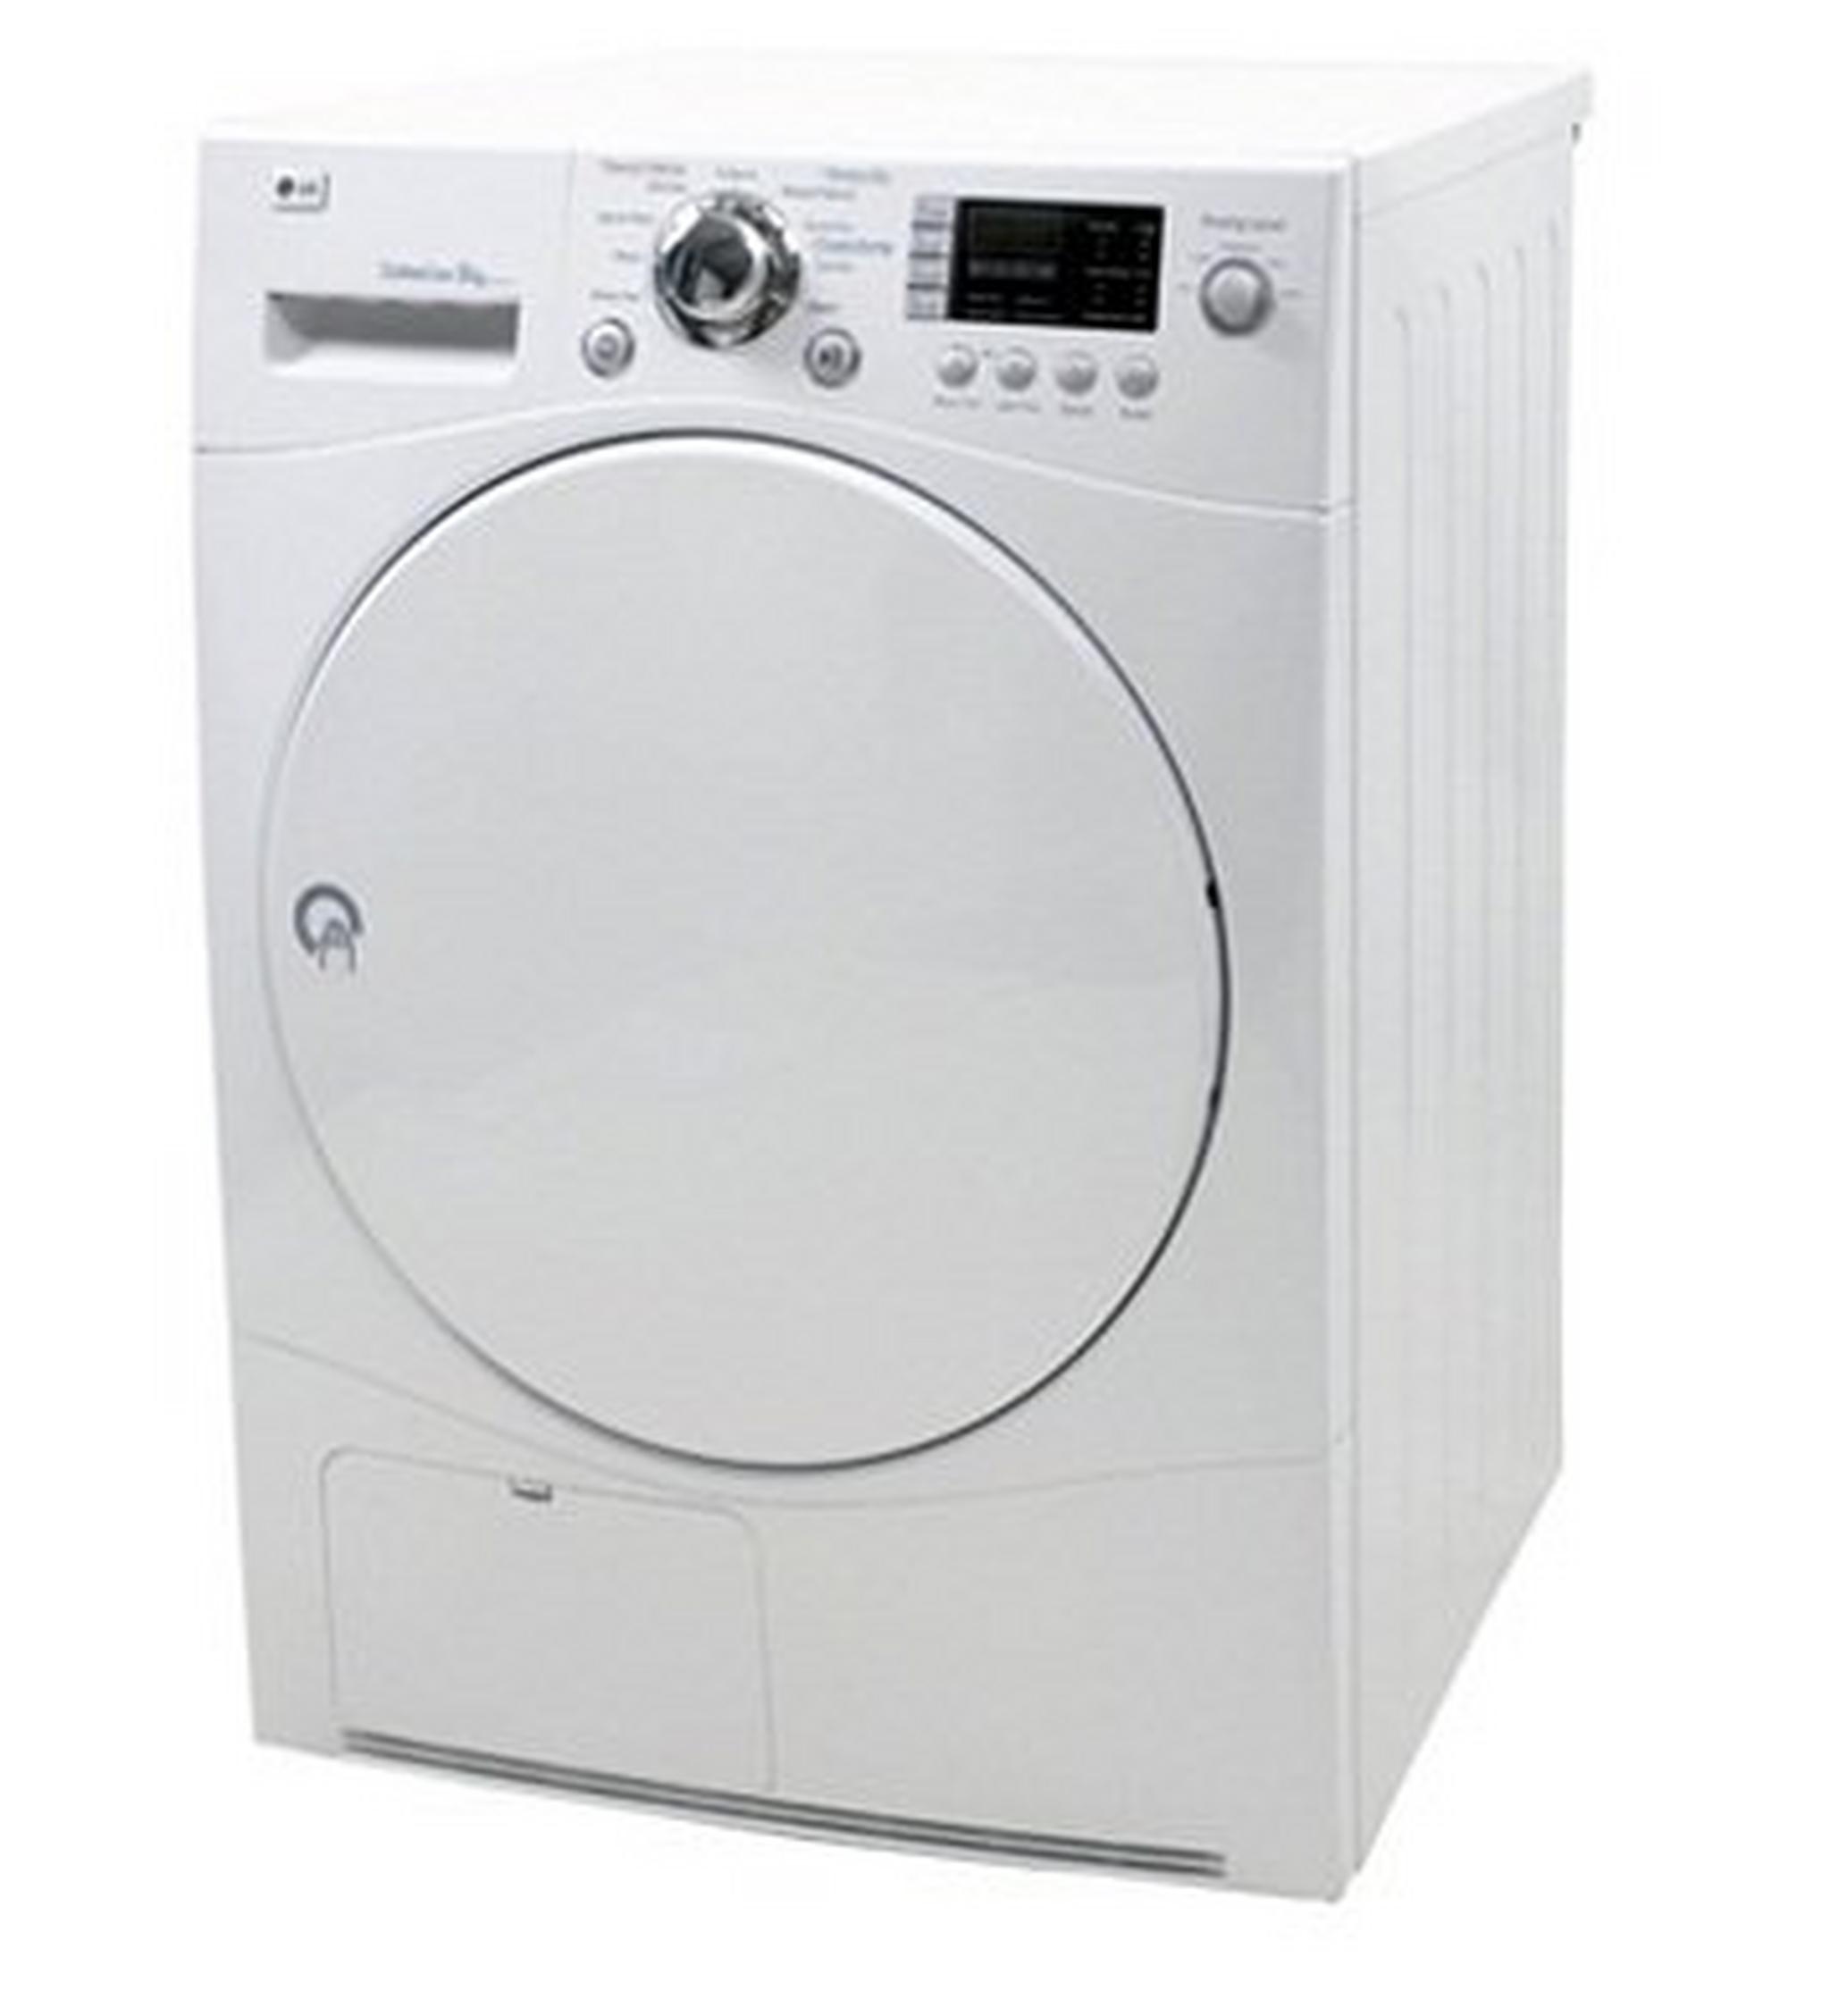 LG 8kg Dryer Condenser - White RC8011A6